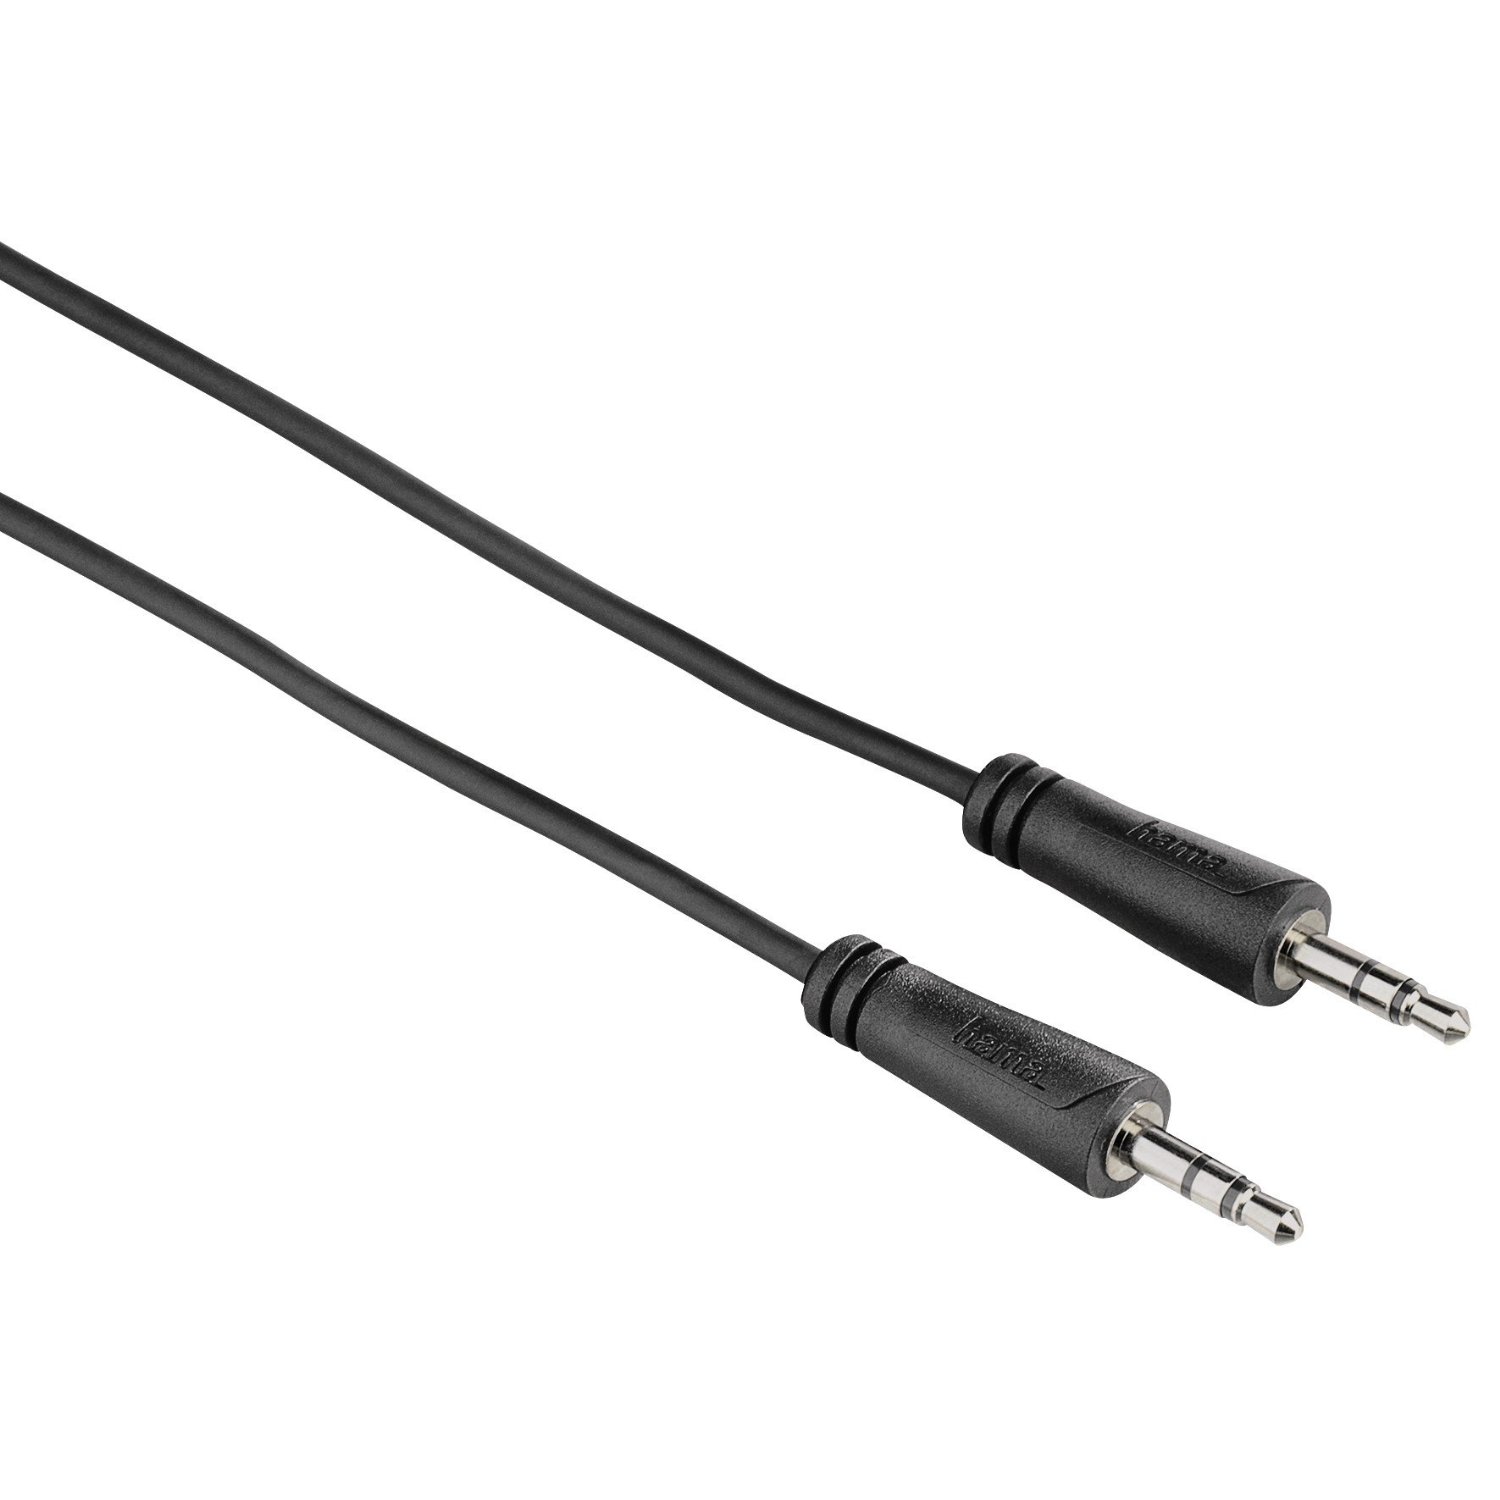 Cablu Hama 122310, 2X 3.5mm Jack plug, 5m